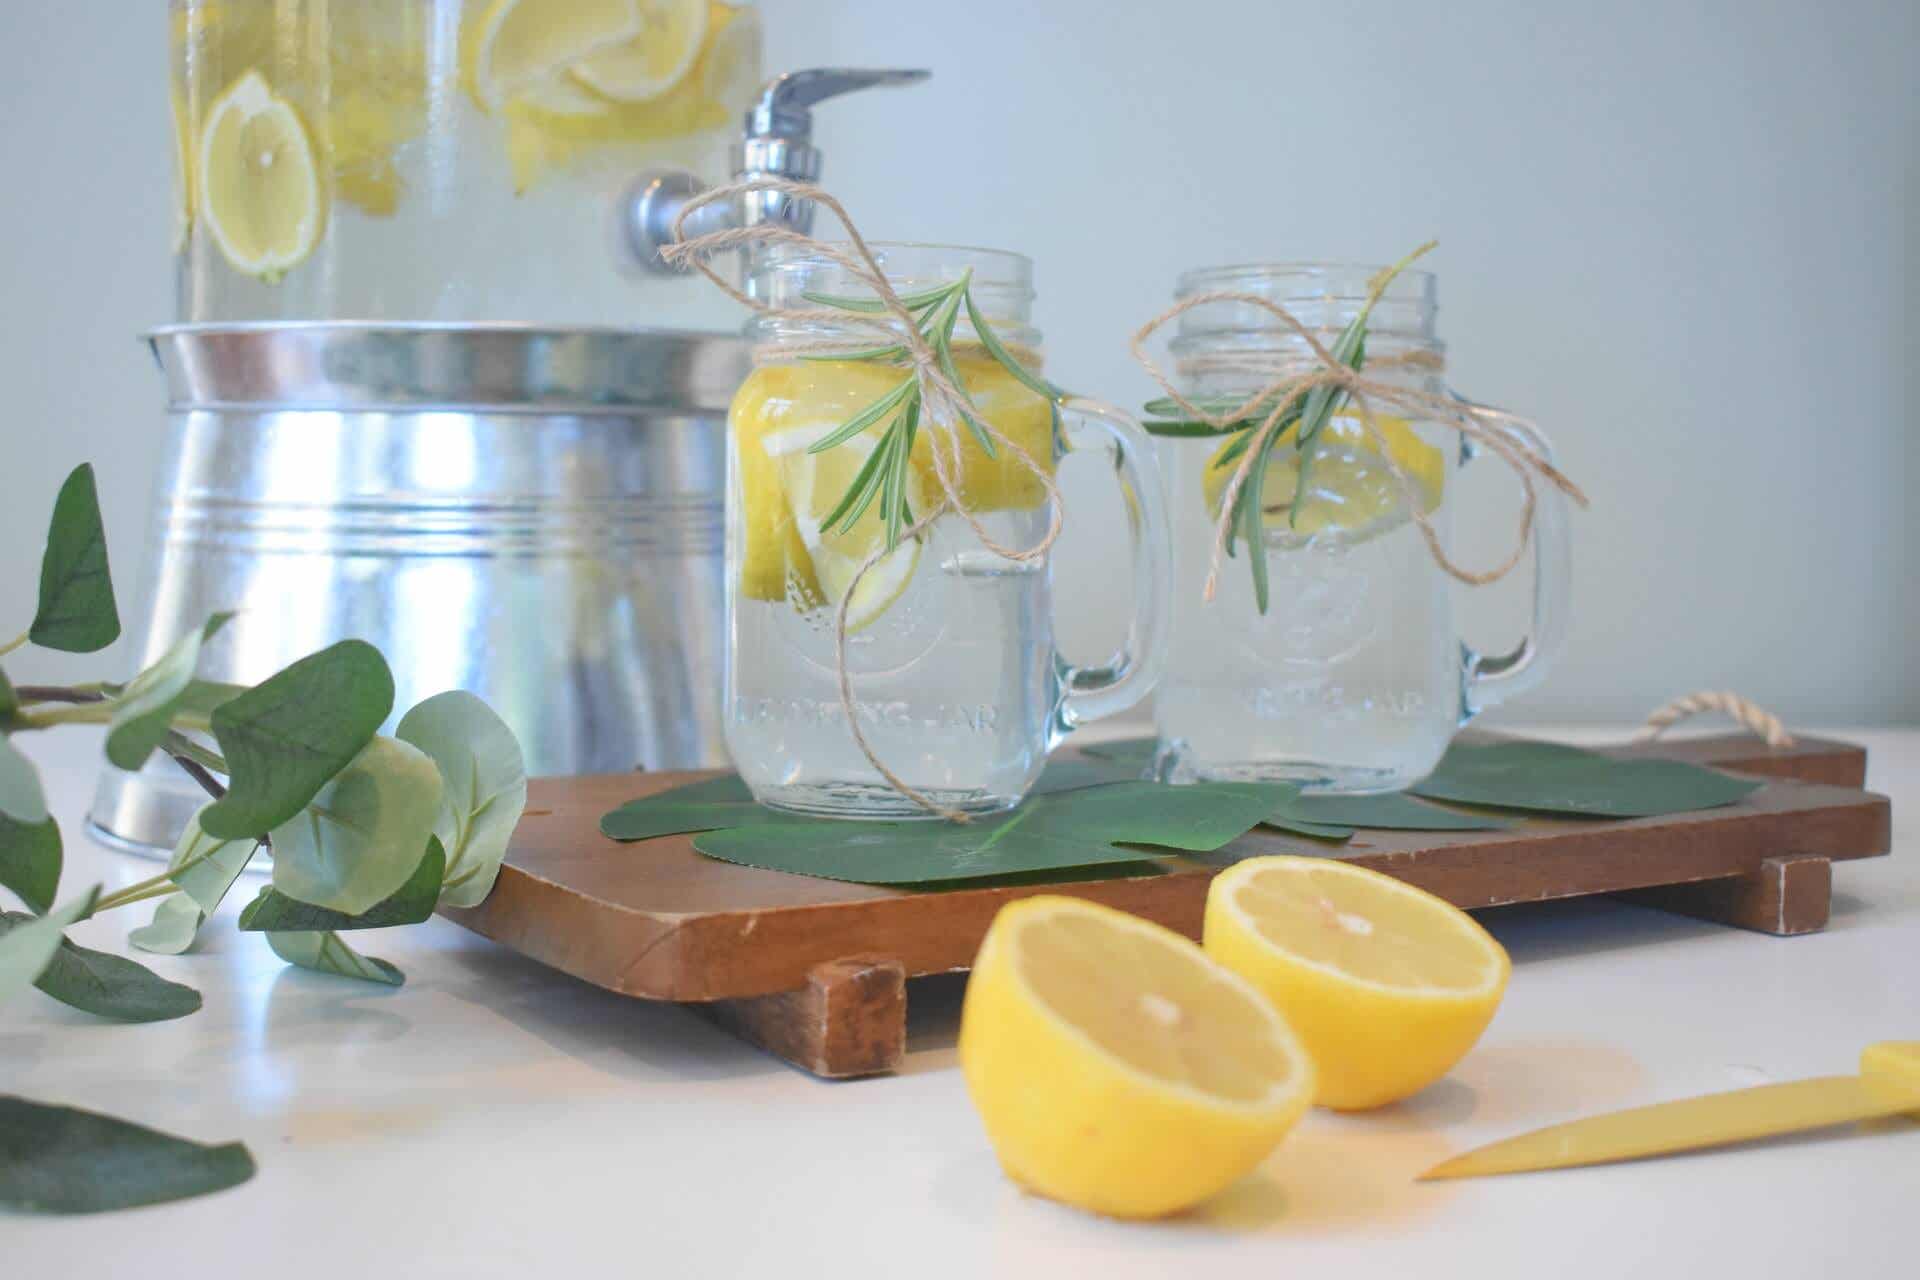 Beneficios de beber agua con limón en ayunas